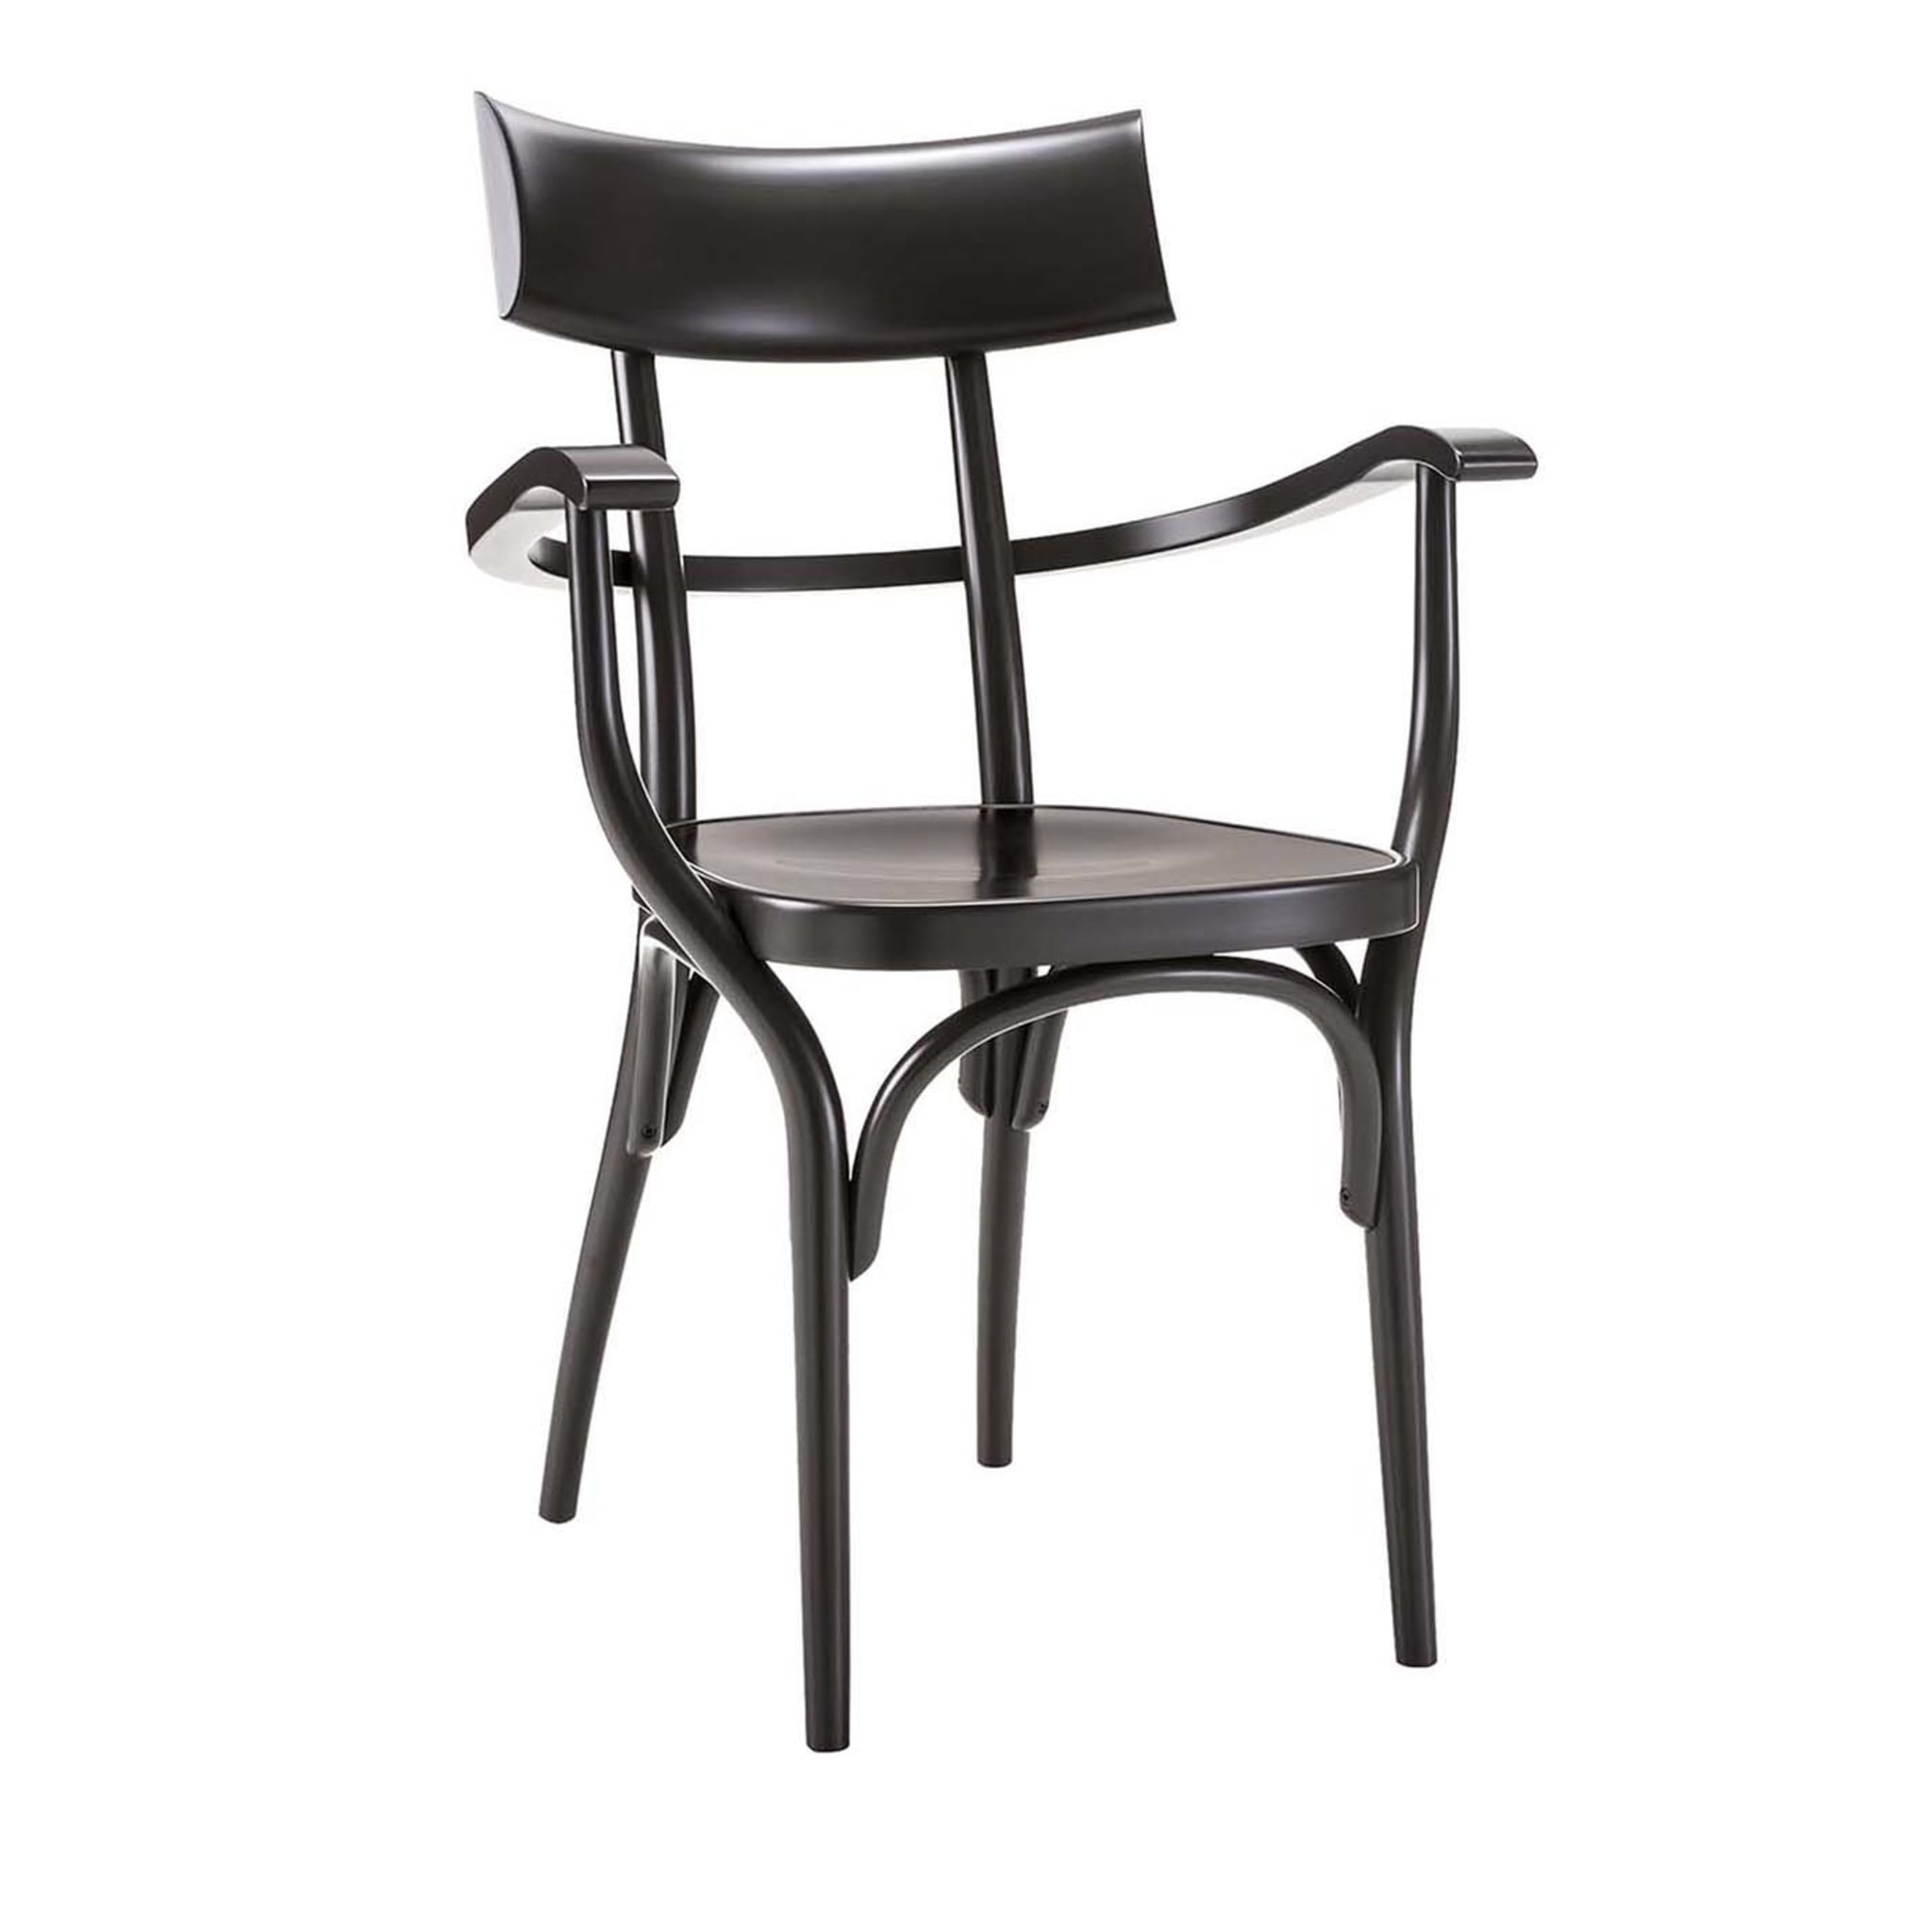 Czech Black Chair by Hermann Czech - Main view